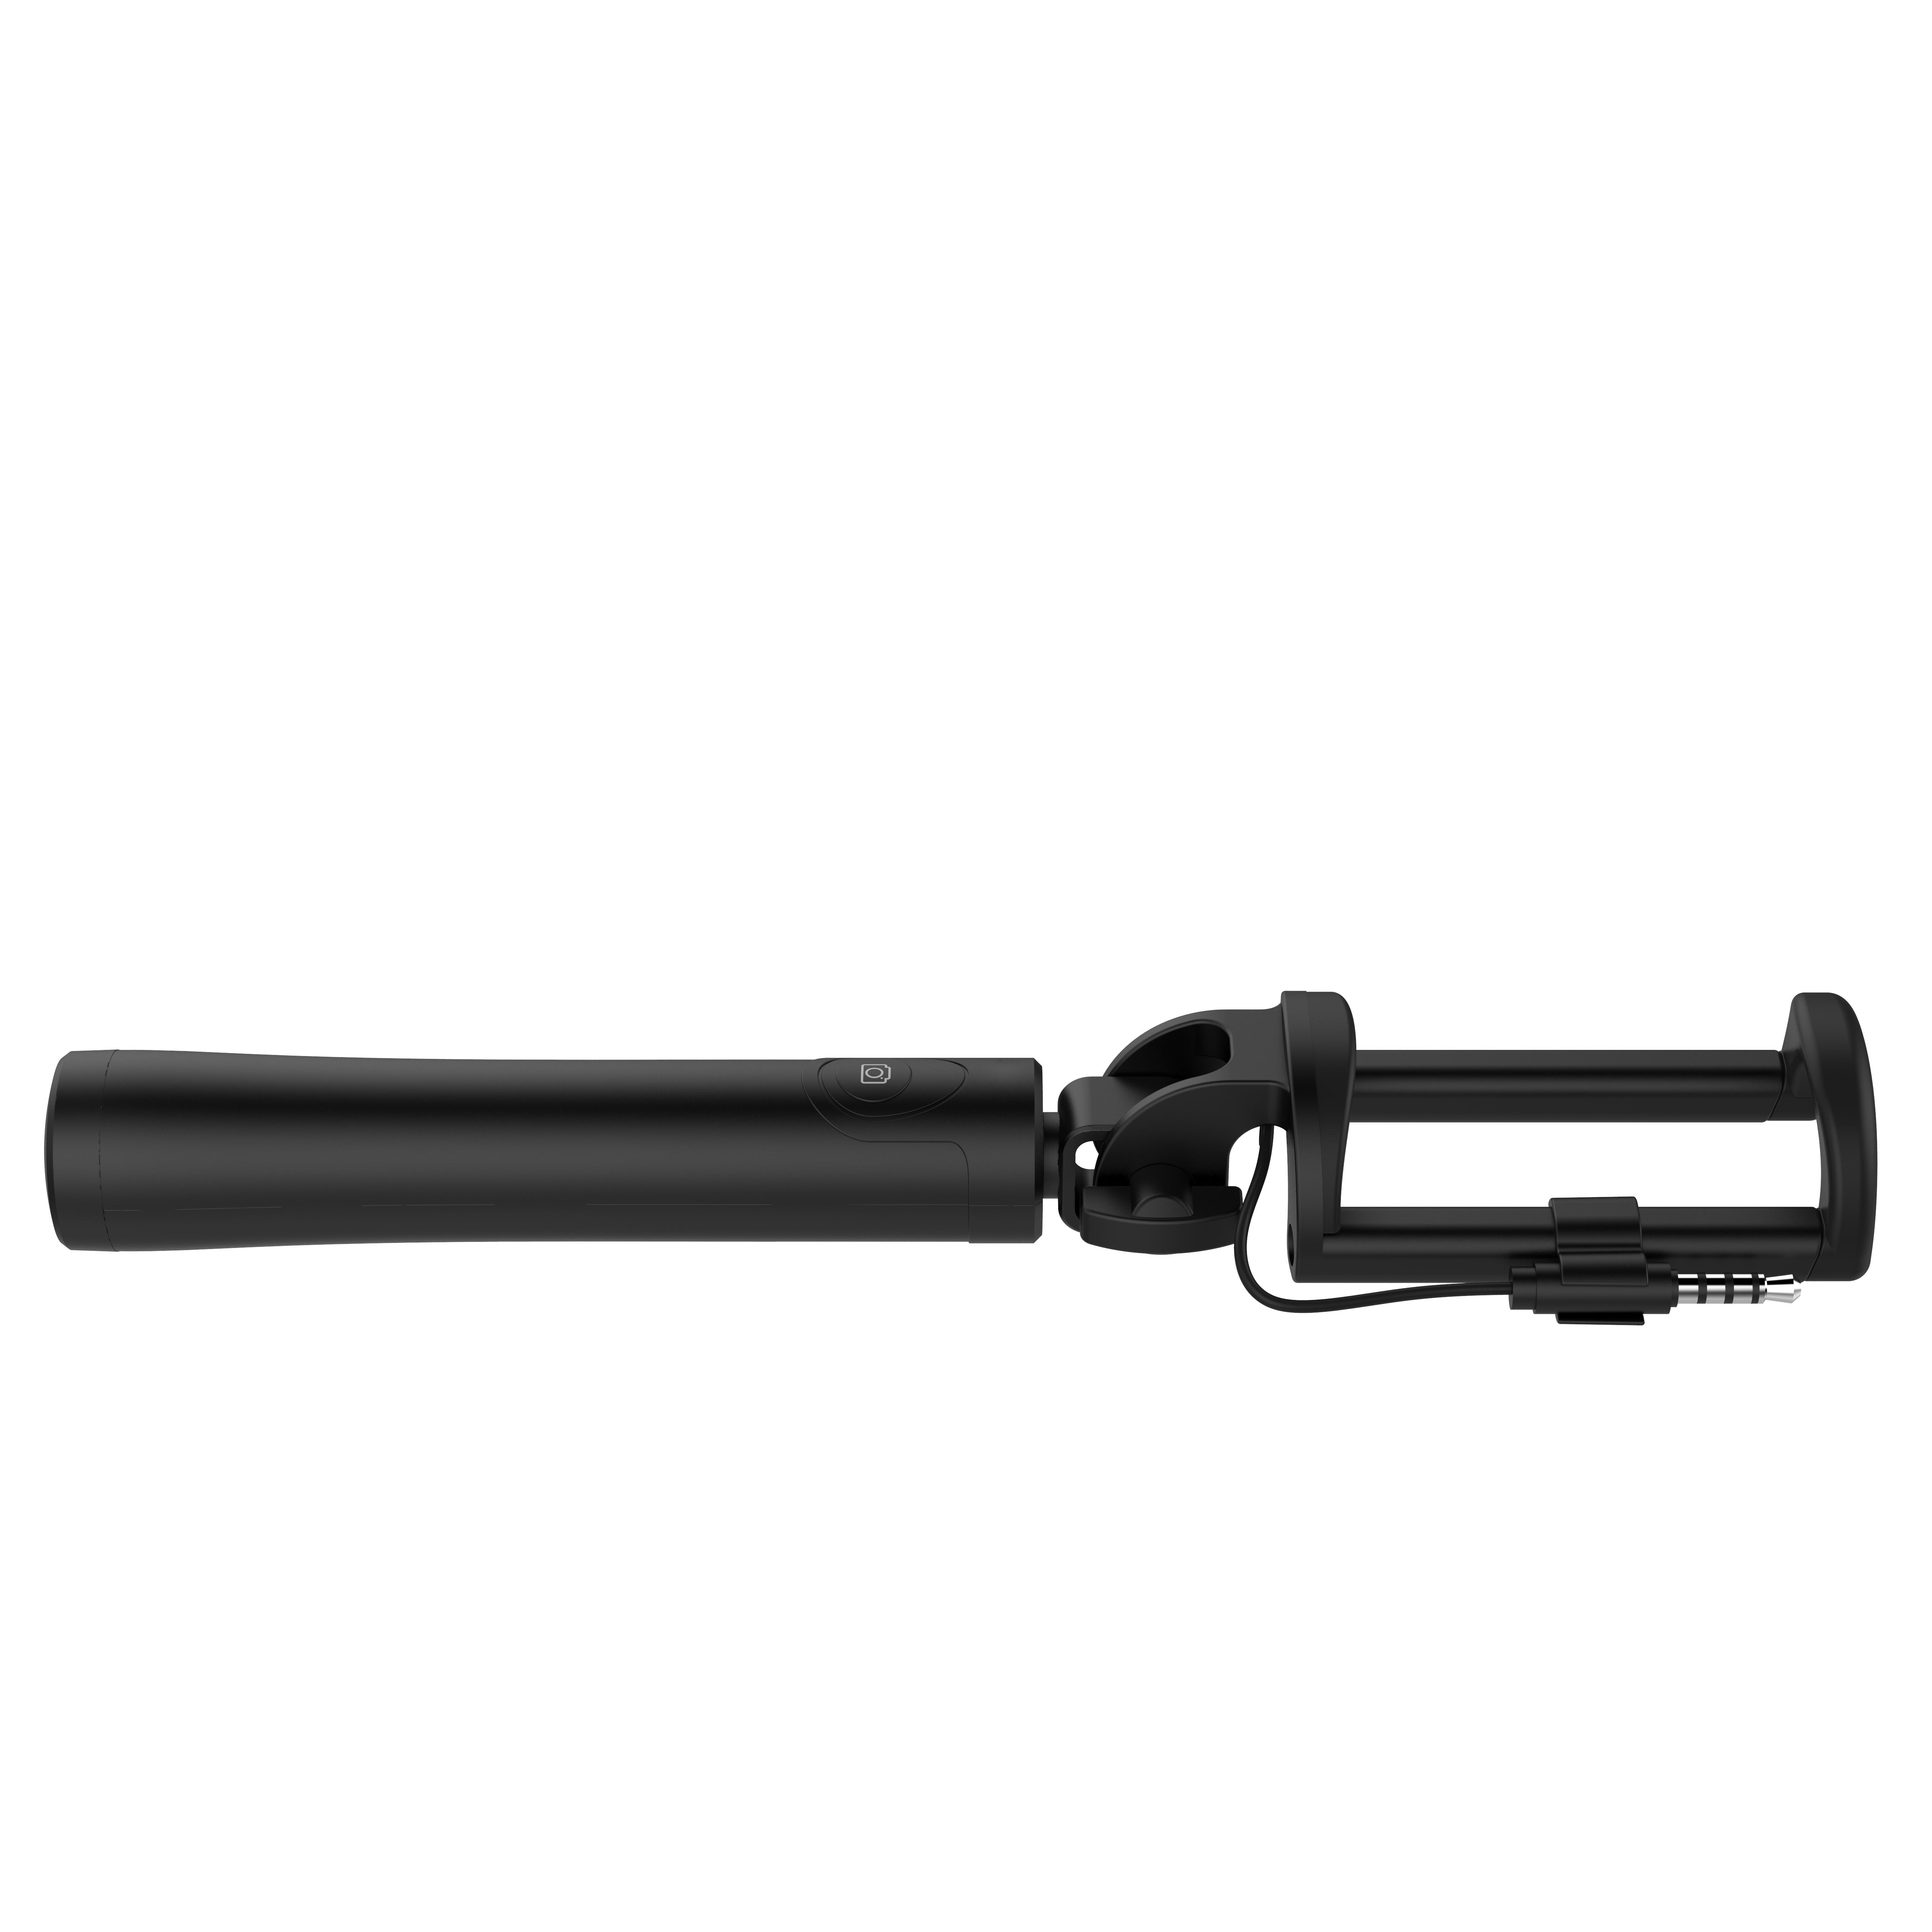 Монопод для селфи cо шнуром CG SS33 NEW-YORK Selfie Stick Black